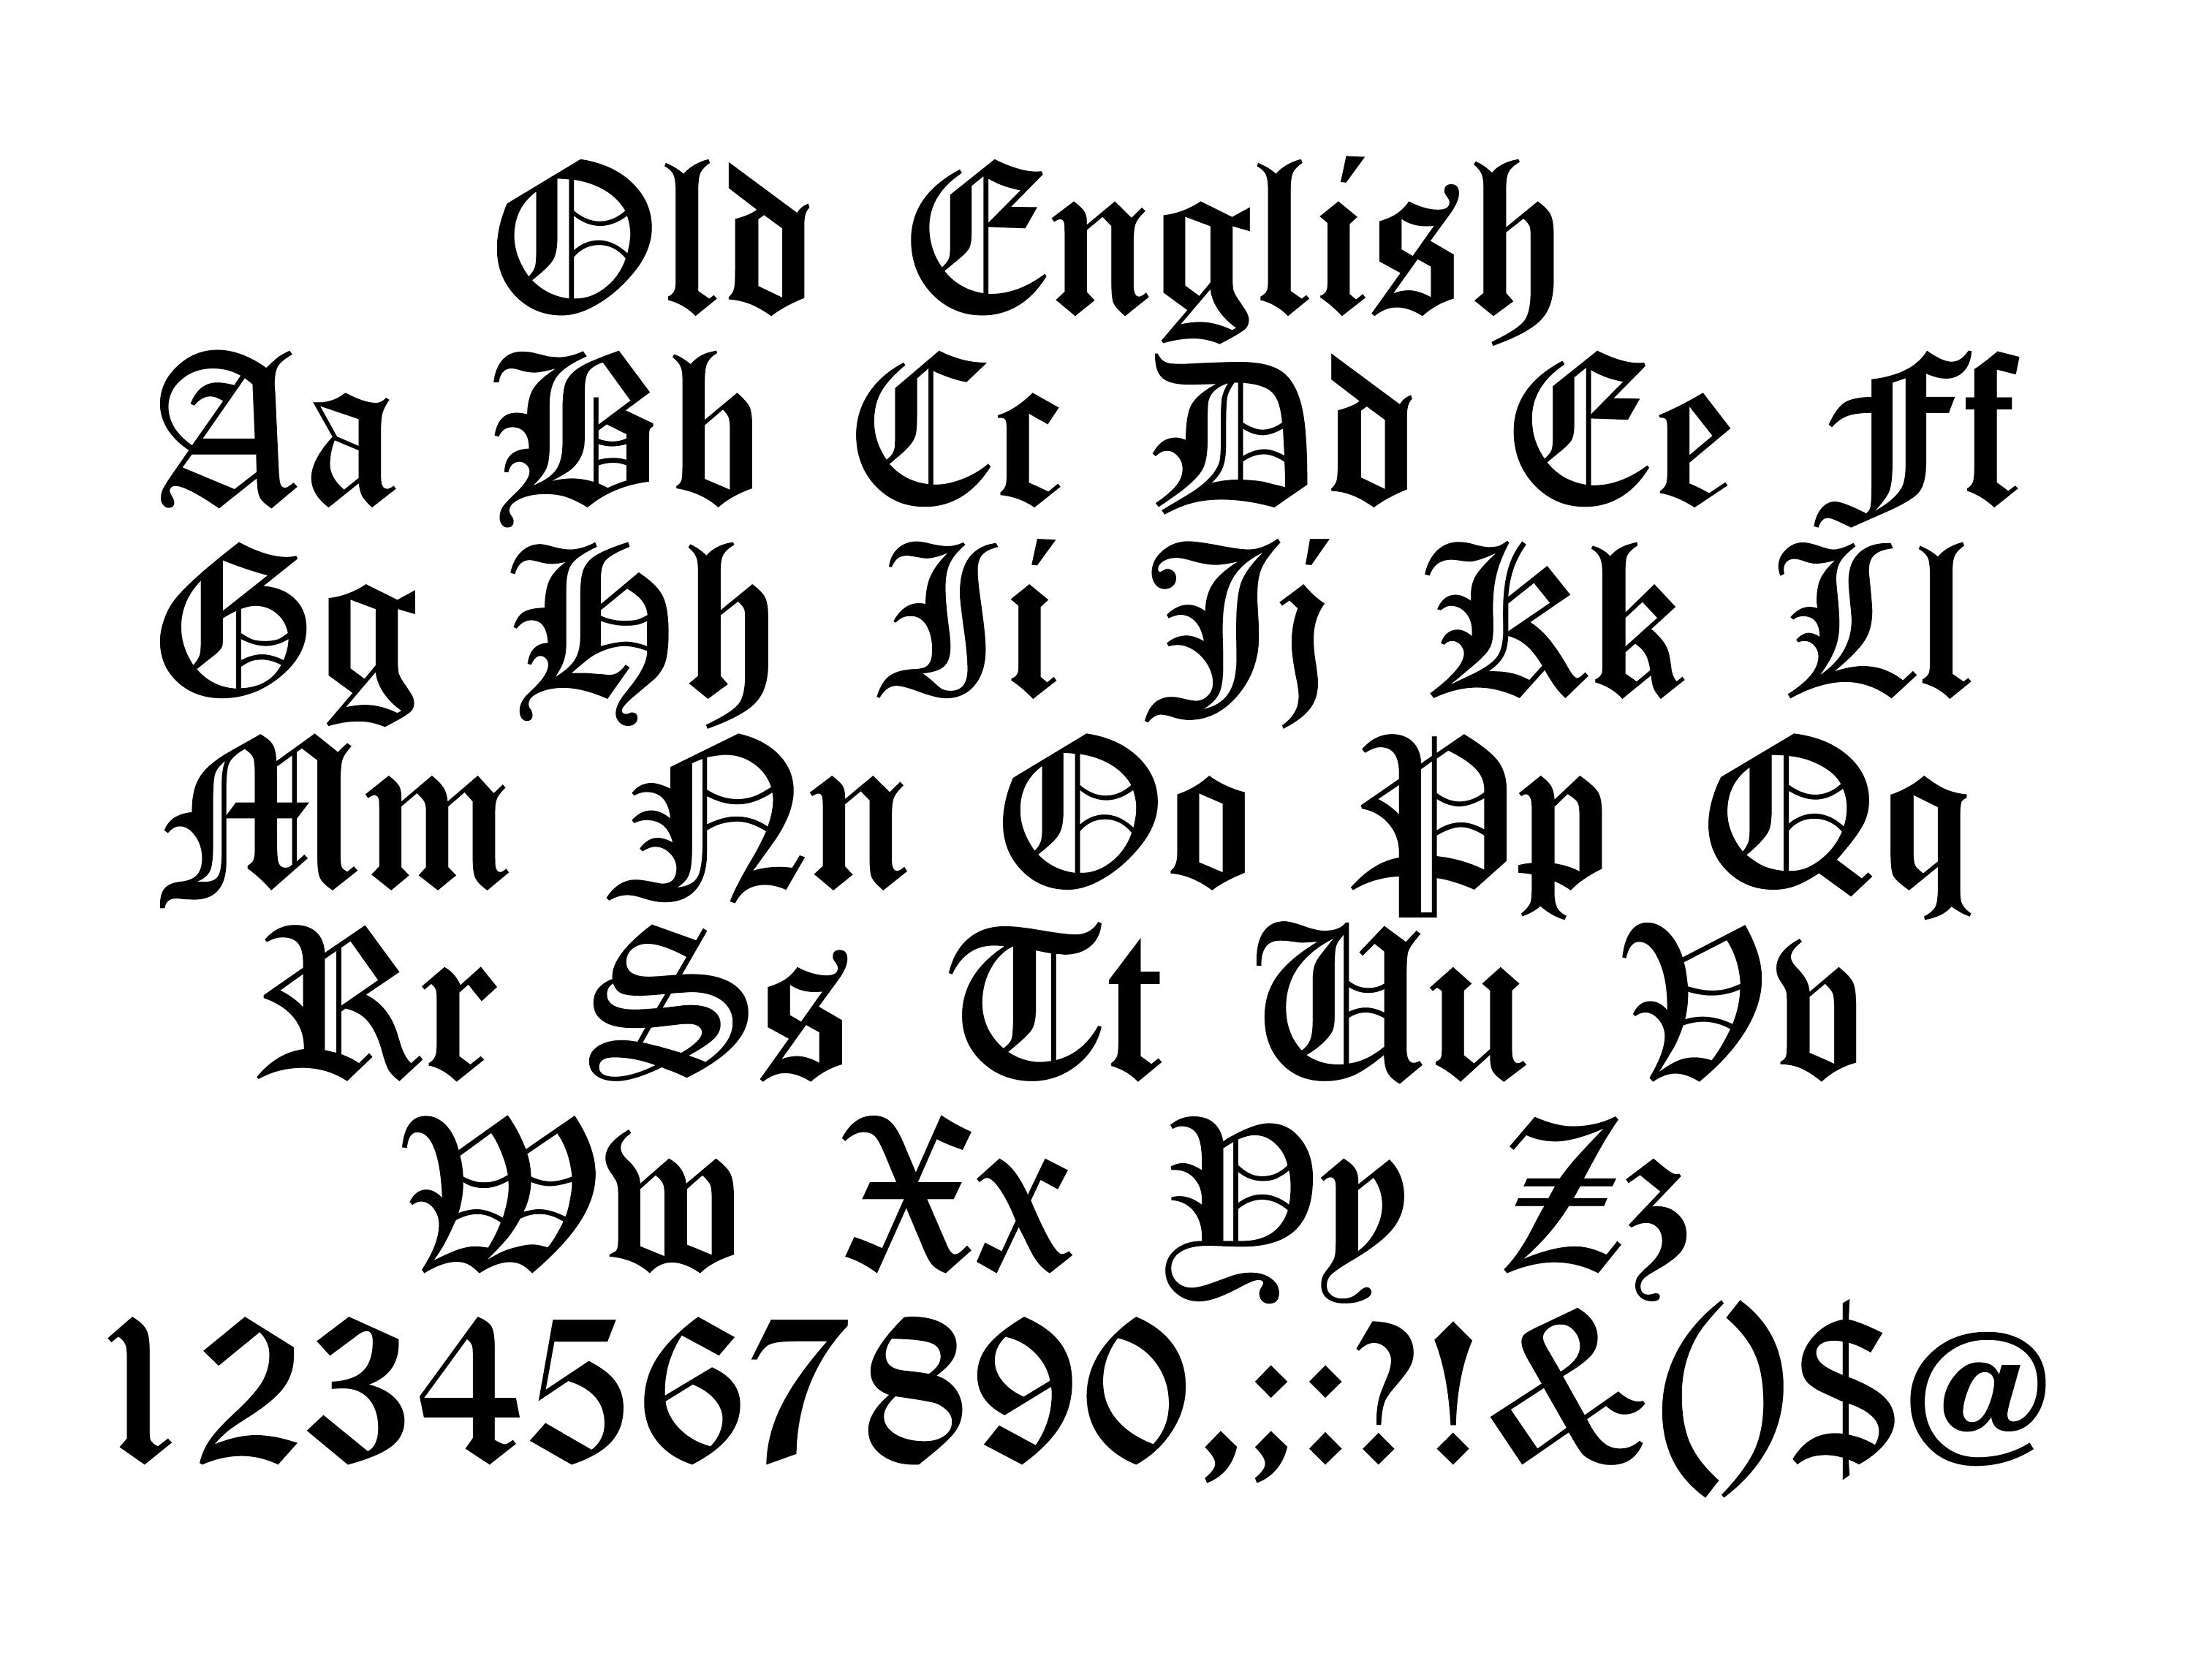 Tập tin Svg phông chữ cổ Old English bảng chữ cái Old English được bán trên Etsy sẽ giúp bạn dễ dàng sử dụng và tích hợp vào những dự án sáng tạo của mình. Bạn có thể tìm kiếm và mua tập tin này trên trang web Etsy để sở hữu ngay tài nguyên thiết kế có giá trị.